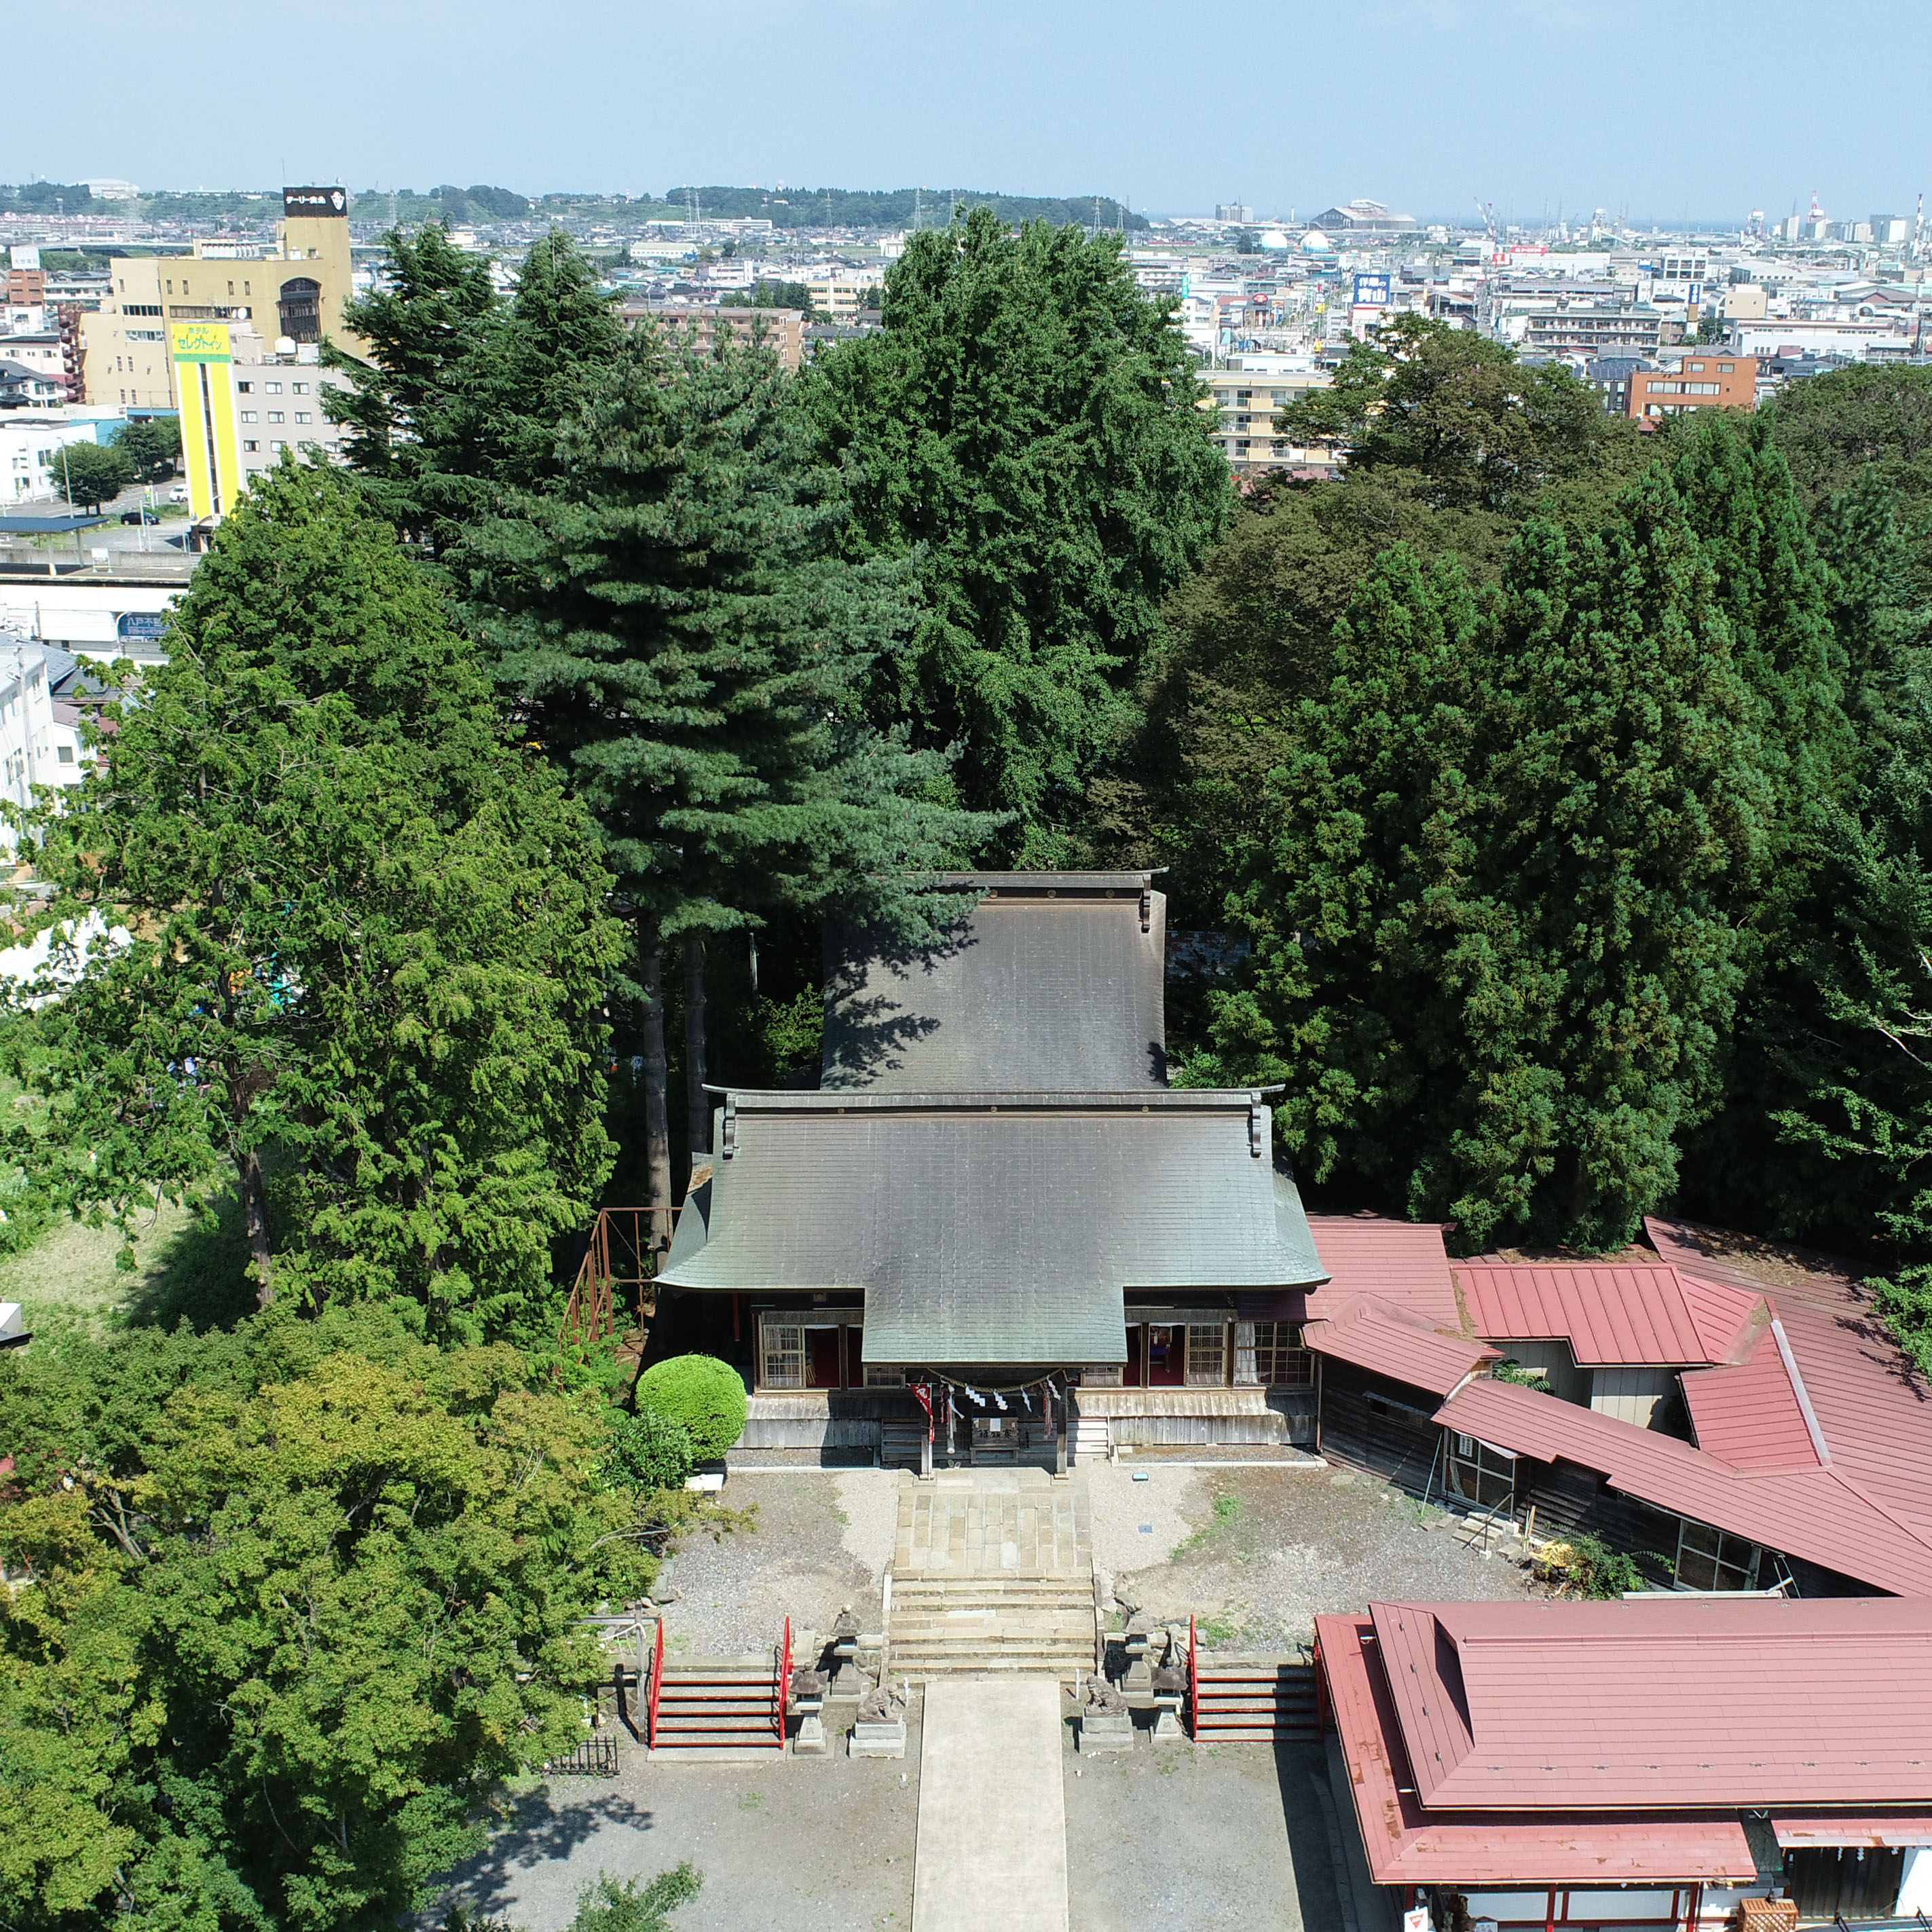 法霊山龗神社